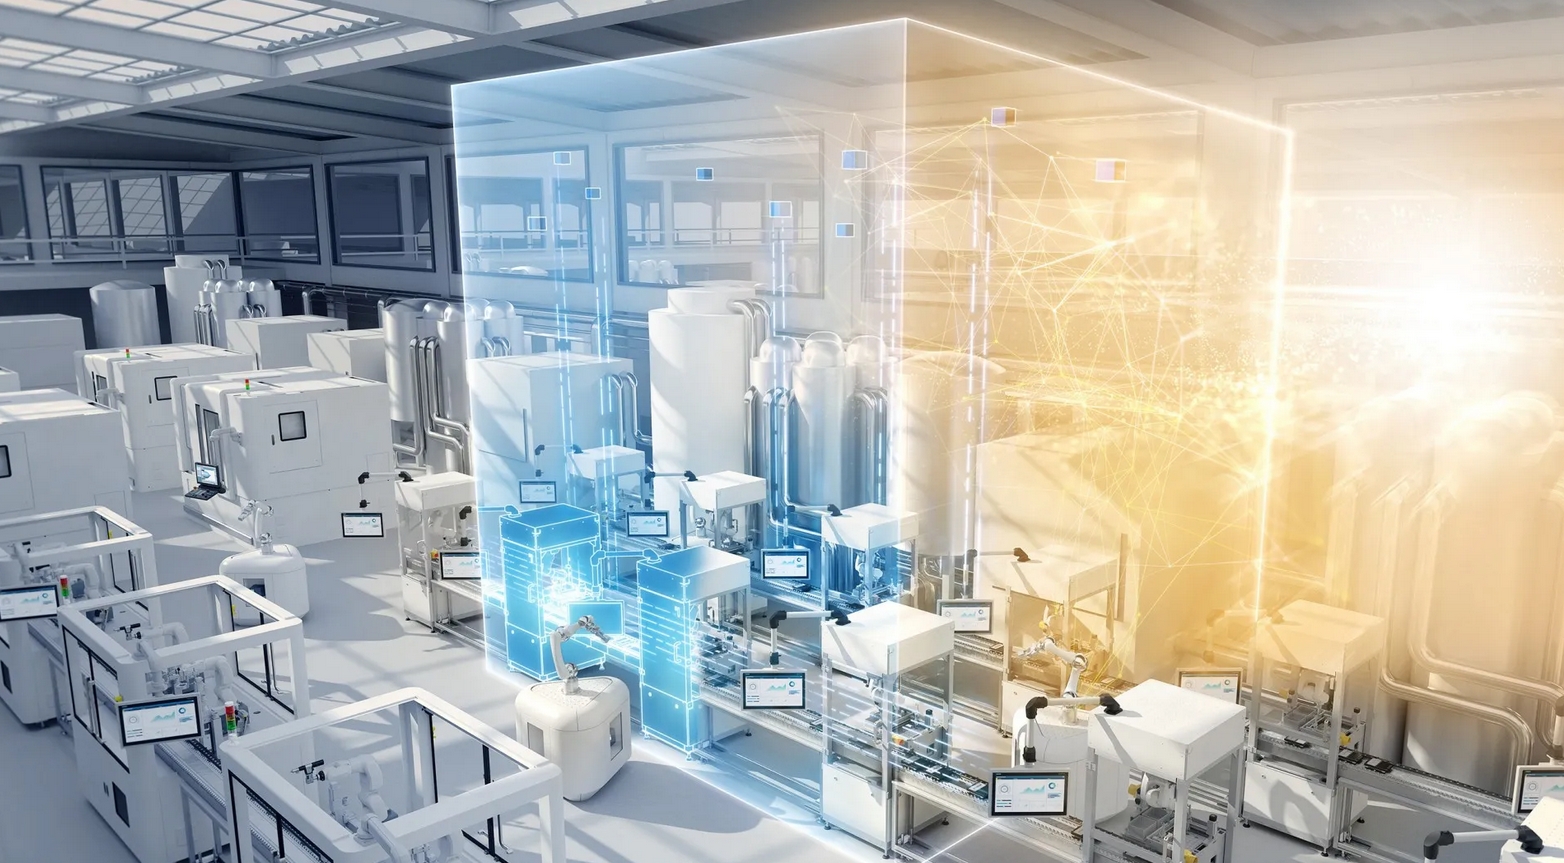 Siemens: Digital Industries: Ein Gamechanger in der industriellen Transformation!